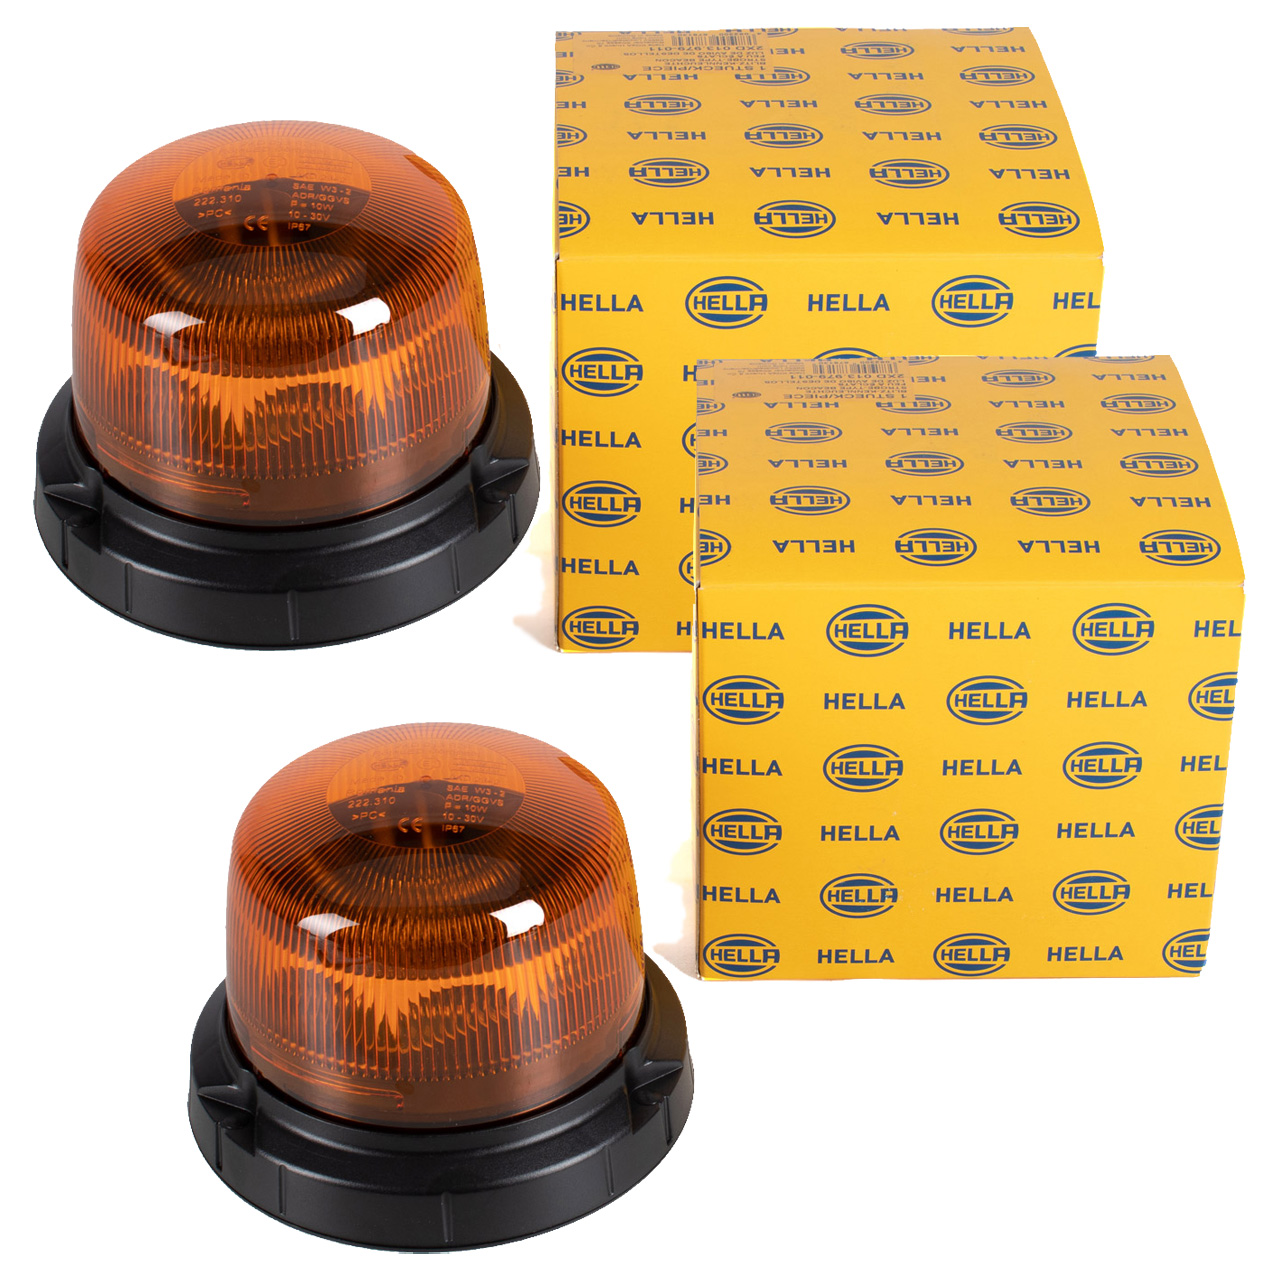 2x HELLA 2XD013979011 LED Warnleuchte Blitz-Kennleuchte Rundumleuchte RotaLED Compact gelb